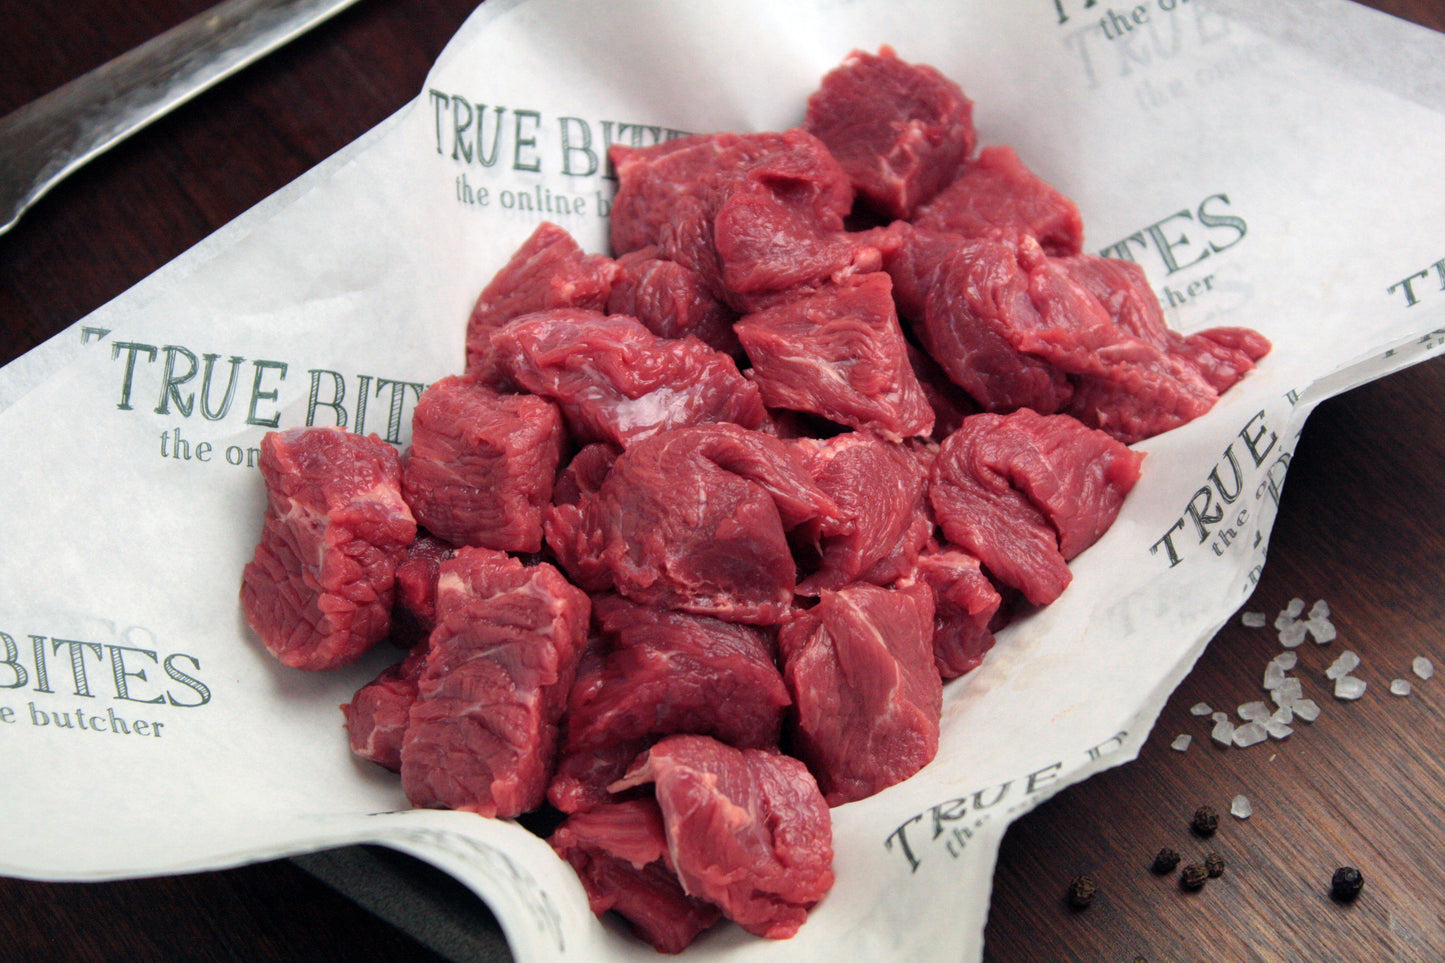 diced beef steak displayed on true bites greaseproof paper